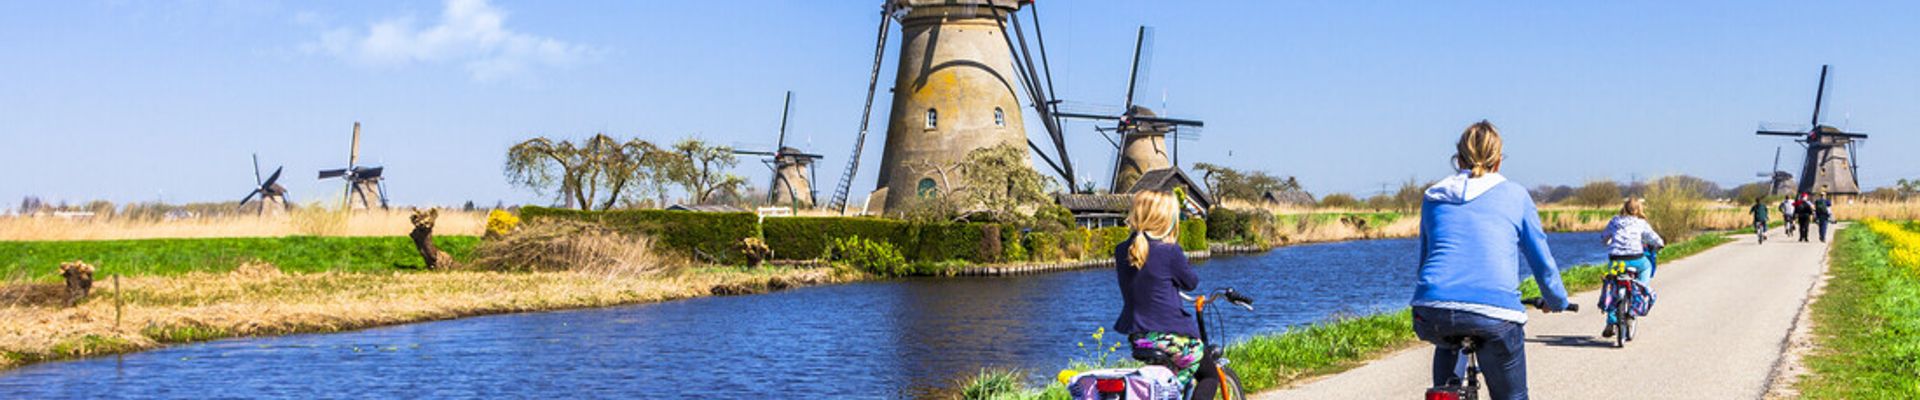 Windmühle Holland